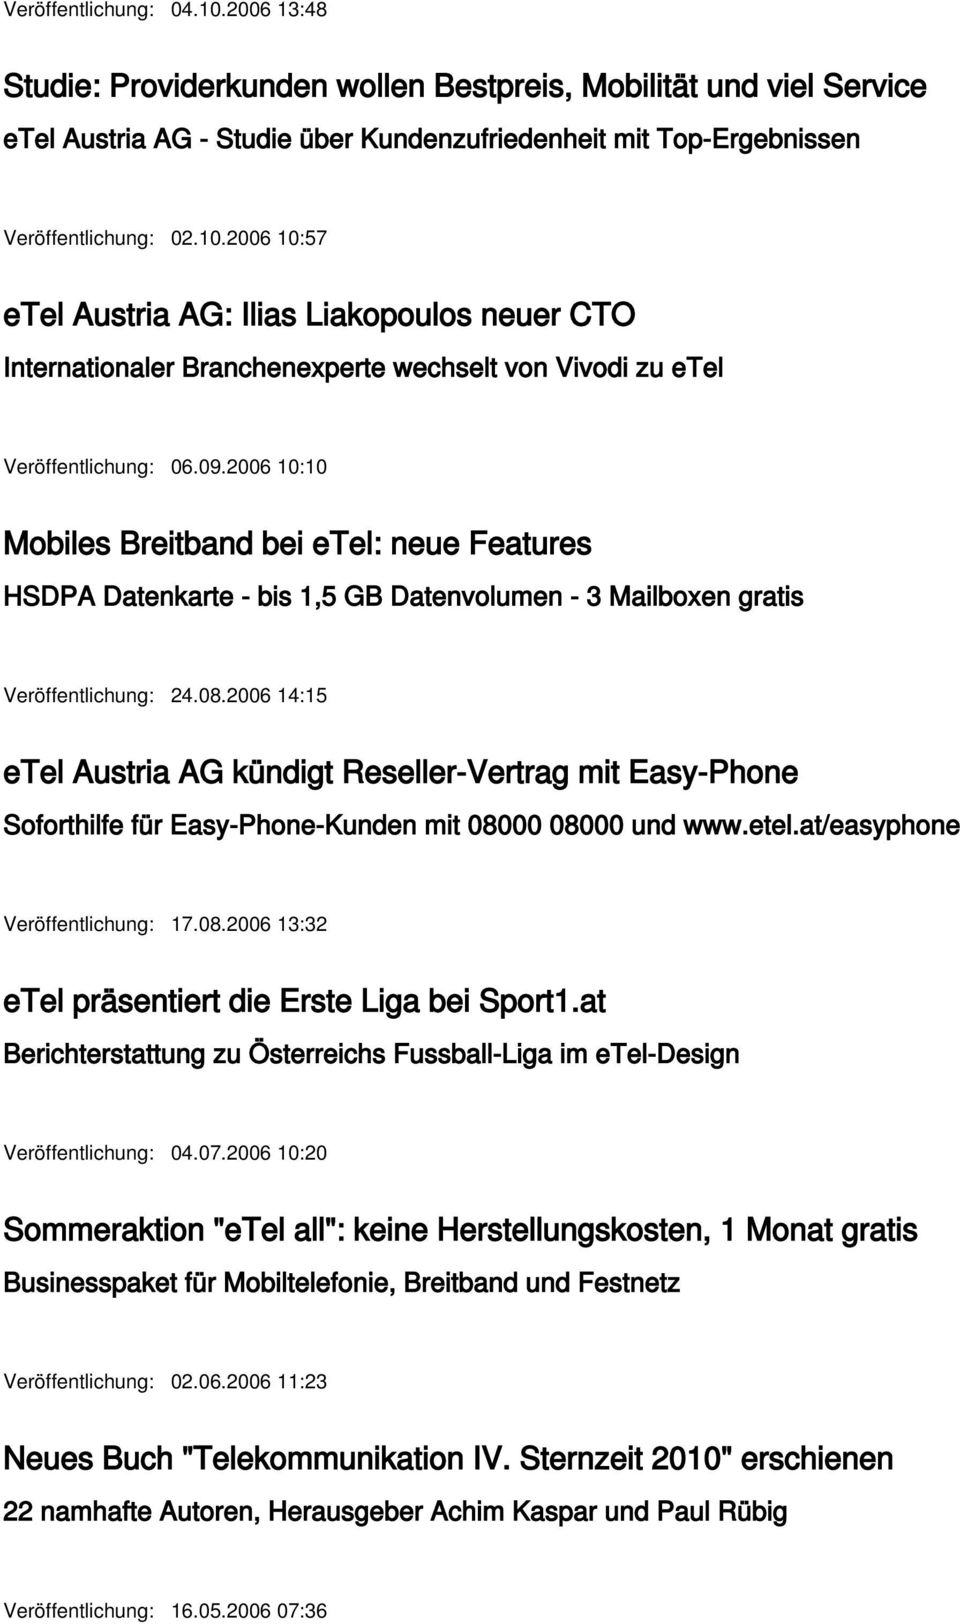 2006 14:15 etel Austria AG kündigt Reseller-Vertrag mit Easy-Phone Soforthilfe für Easy-Phone-Kunden mit 08000 08000 und www.etel.at/easyphone Veröffentlichung: 17.08.2006 13:32 etel präsentiert die Erste Liga bei Sport1.